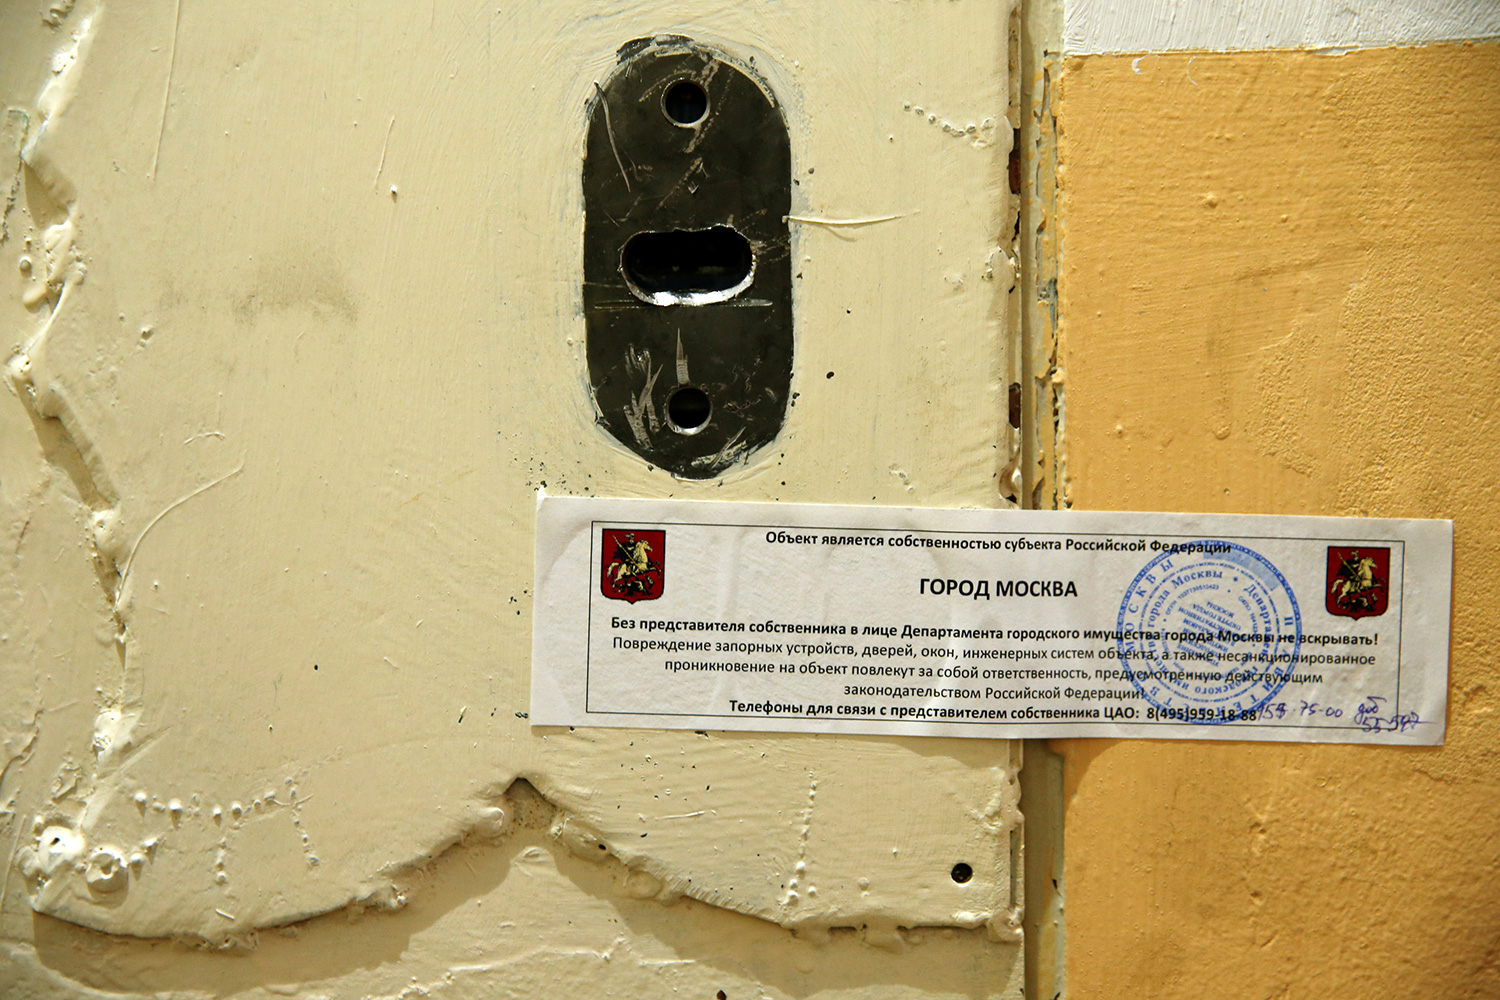 Autoridades rusas cierran la oficina de Amnistía Internacional en Moscú